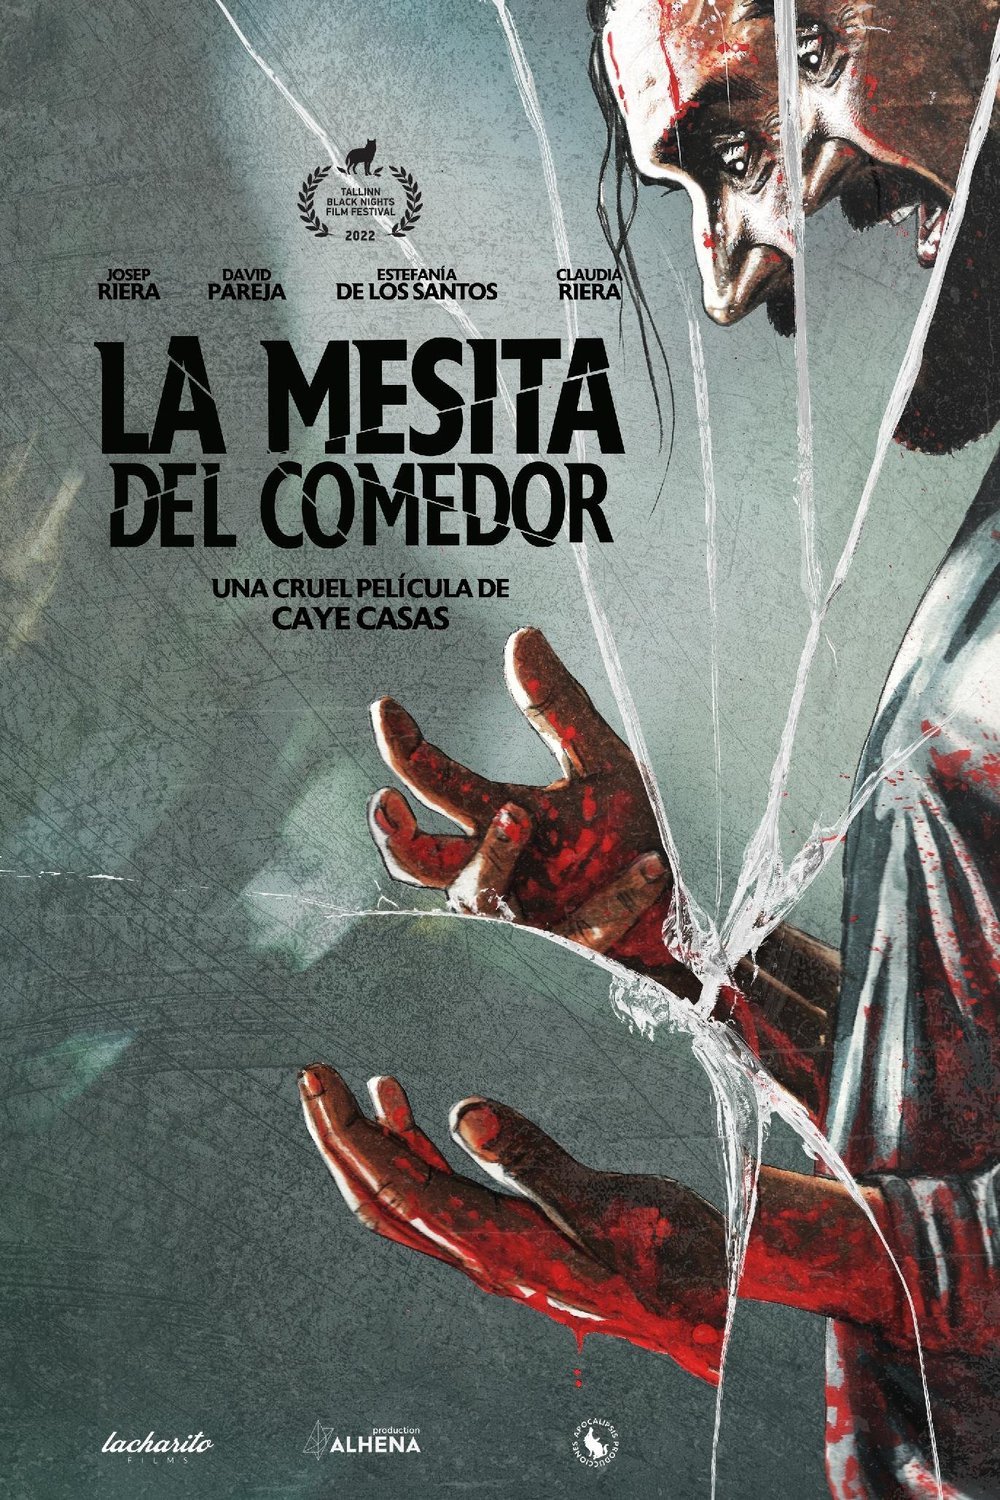 Spanish poster of the movie La mesita del comedor